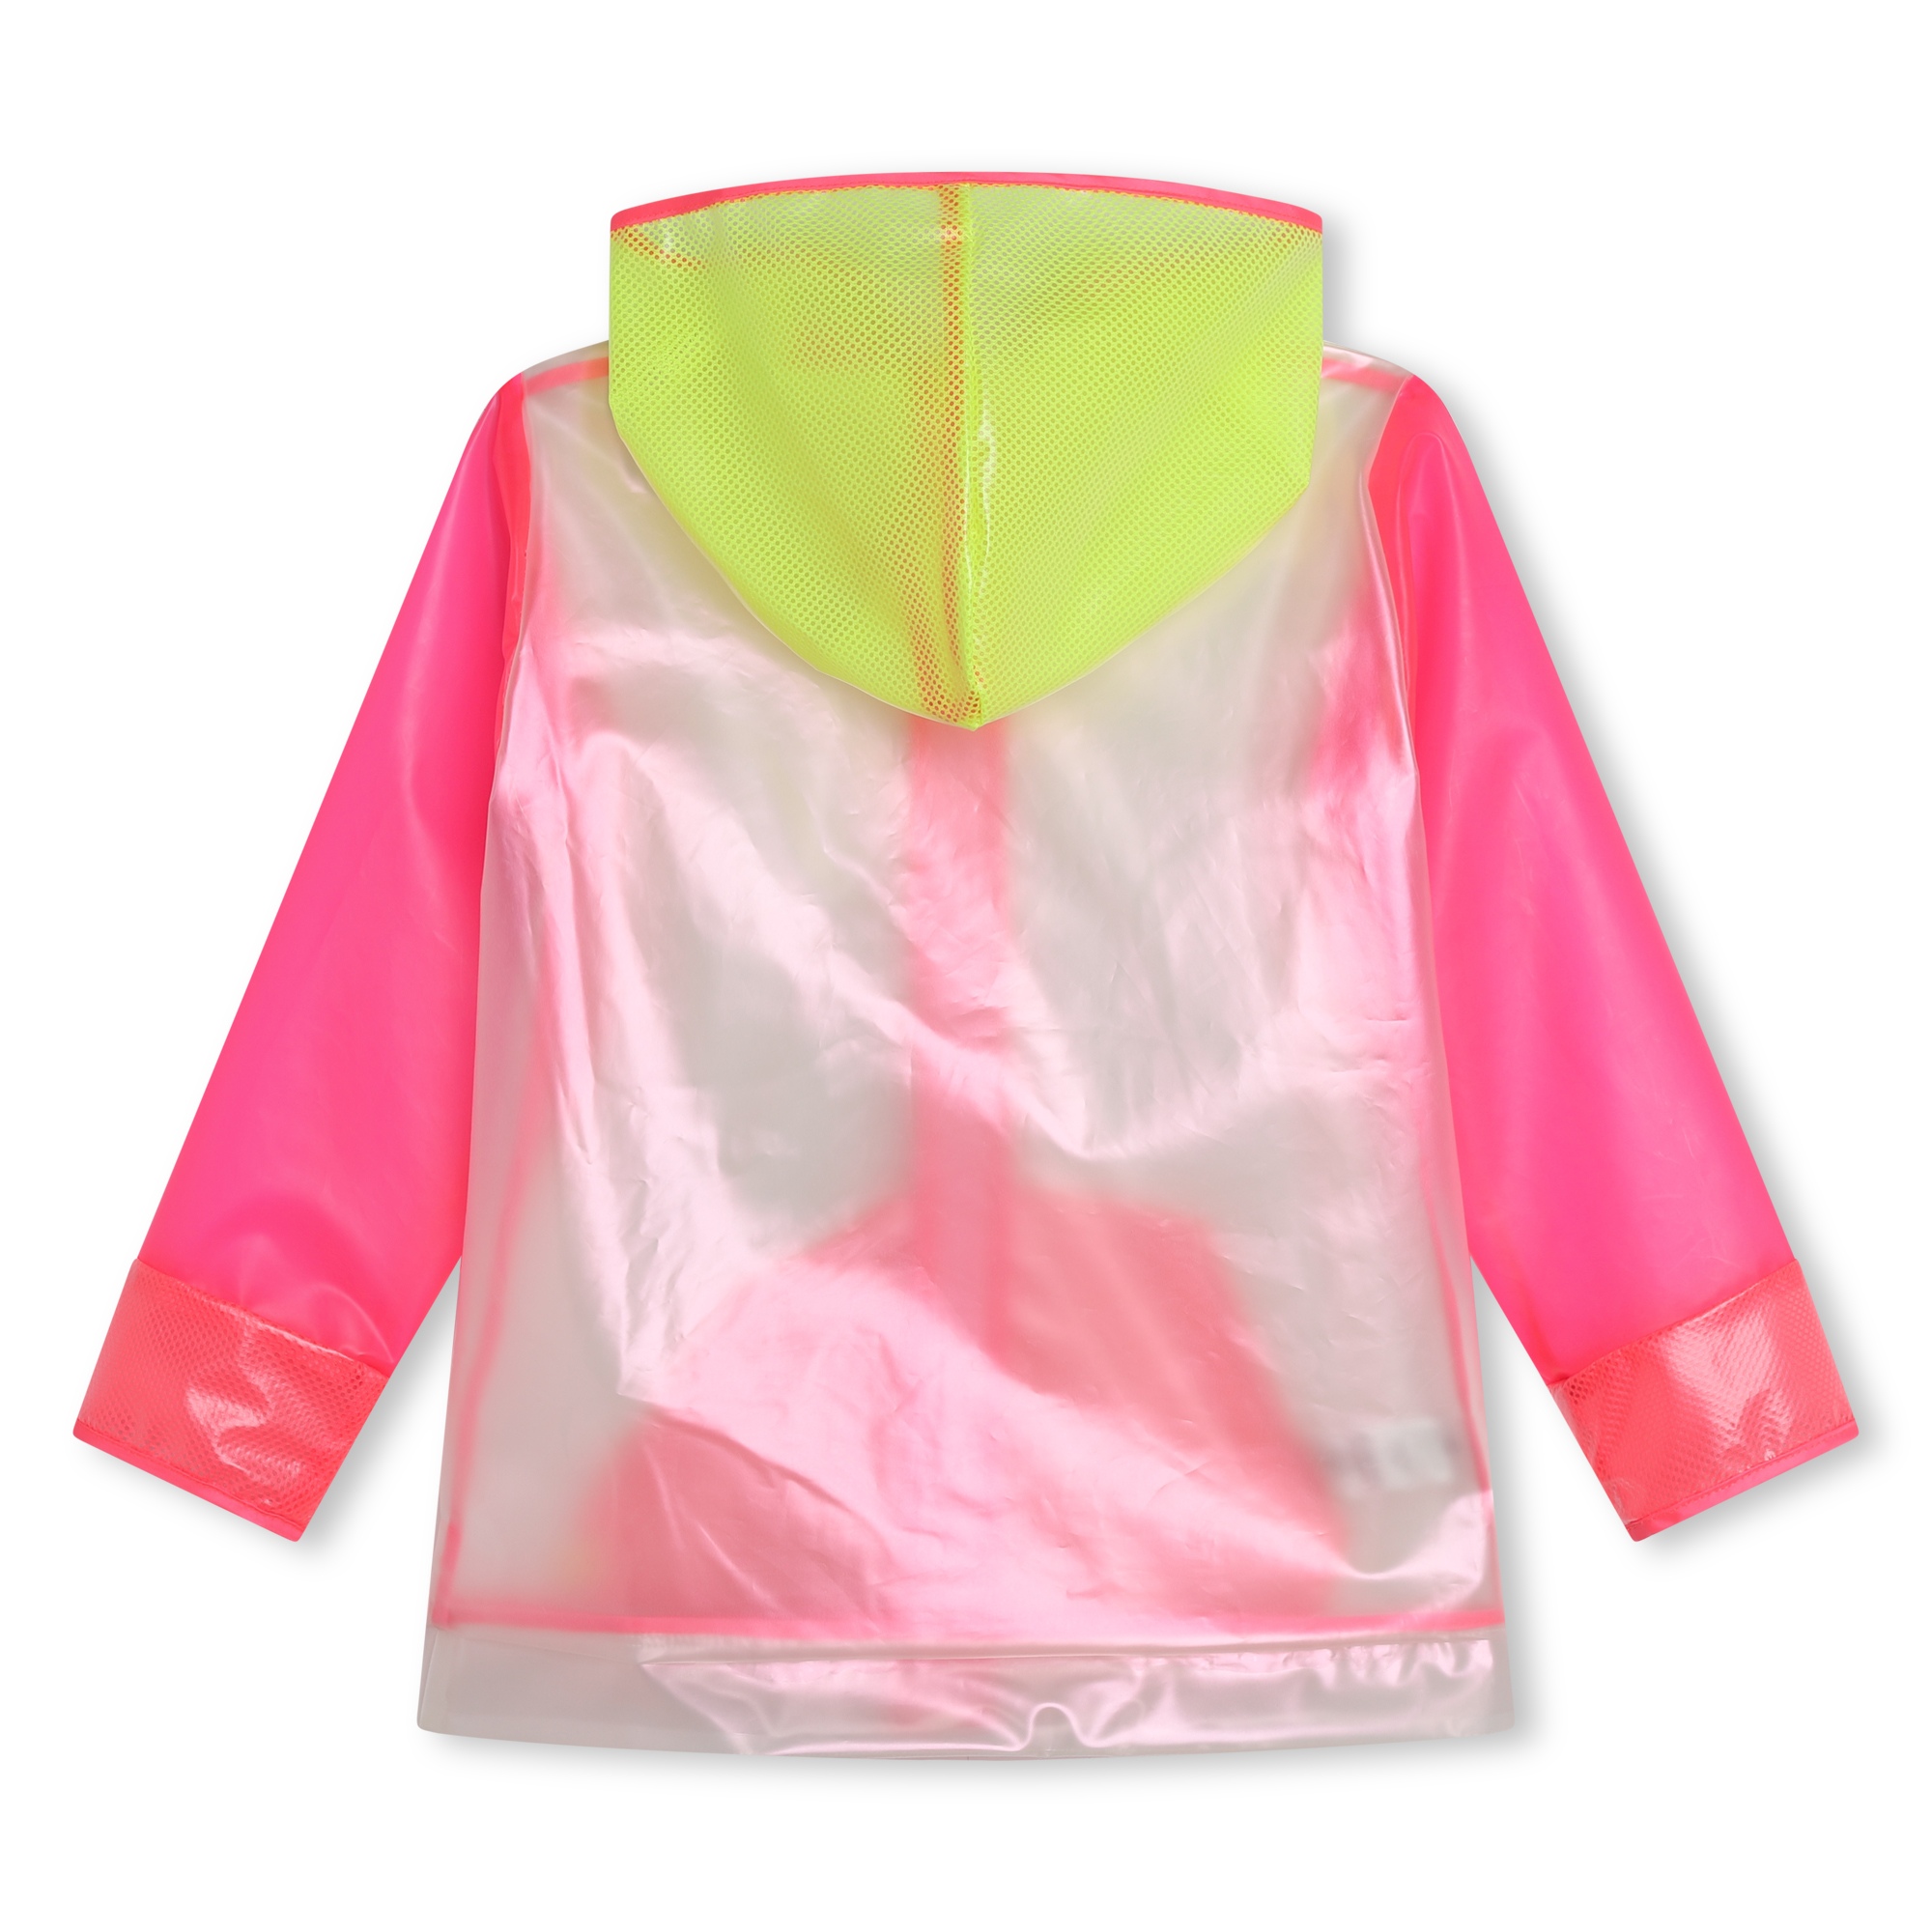 Transparent hooded raincoat BILLIEBLUSH for GIRL